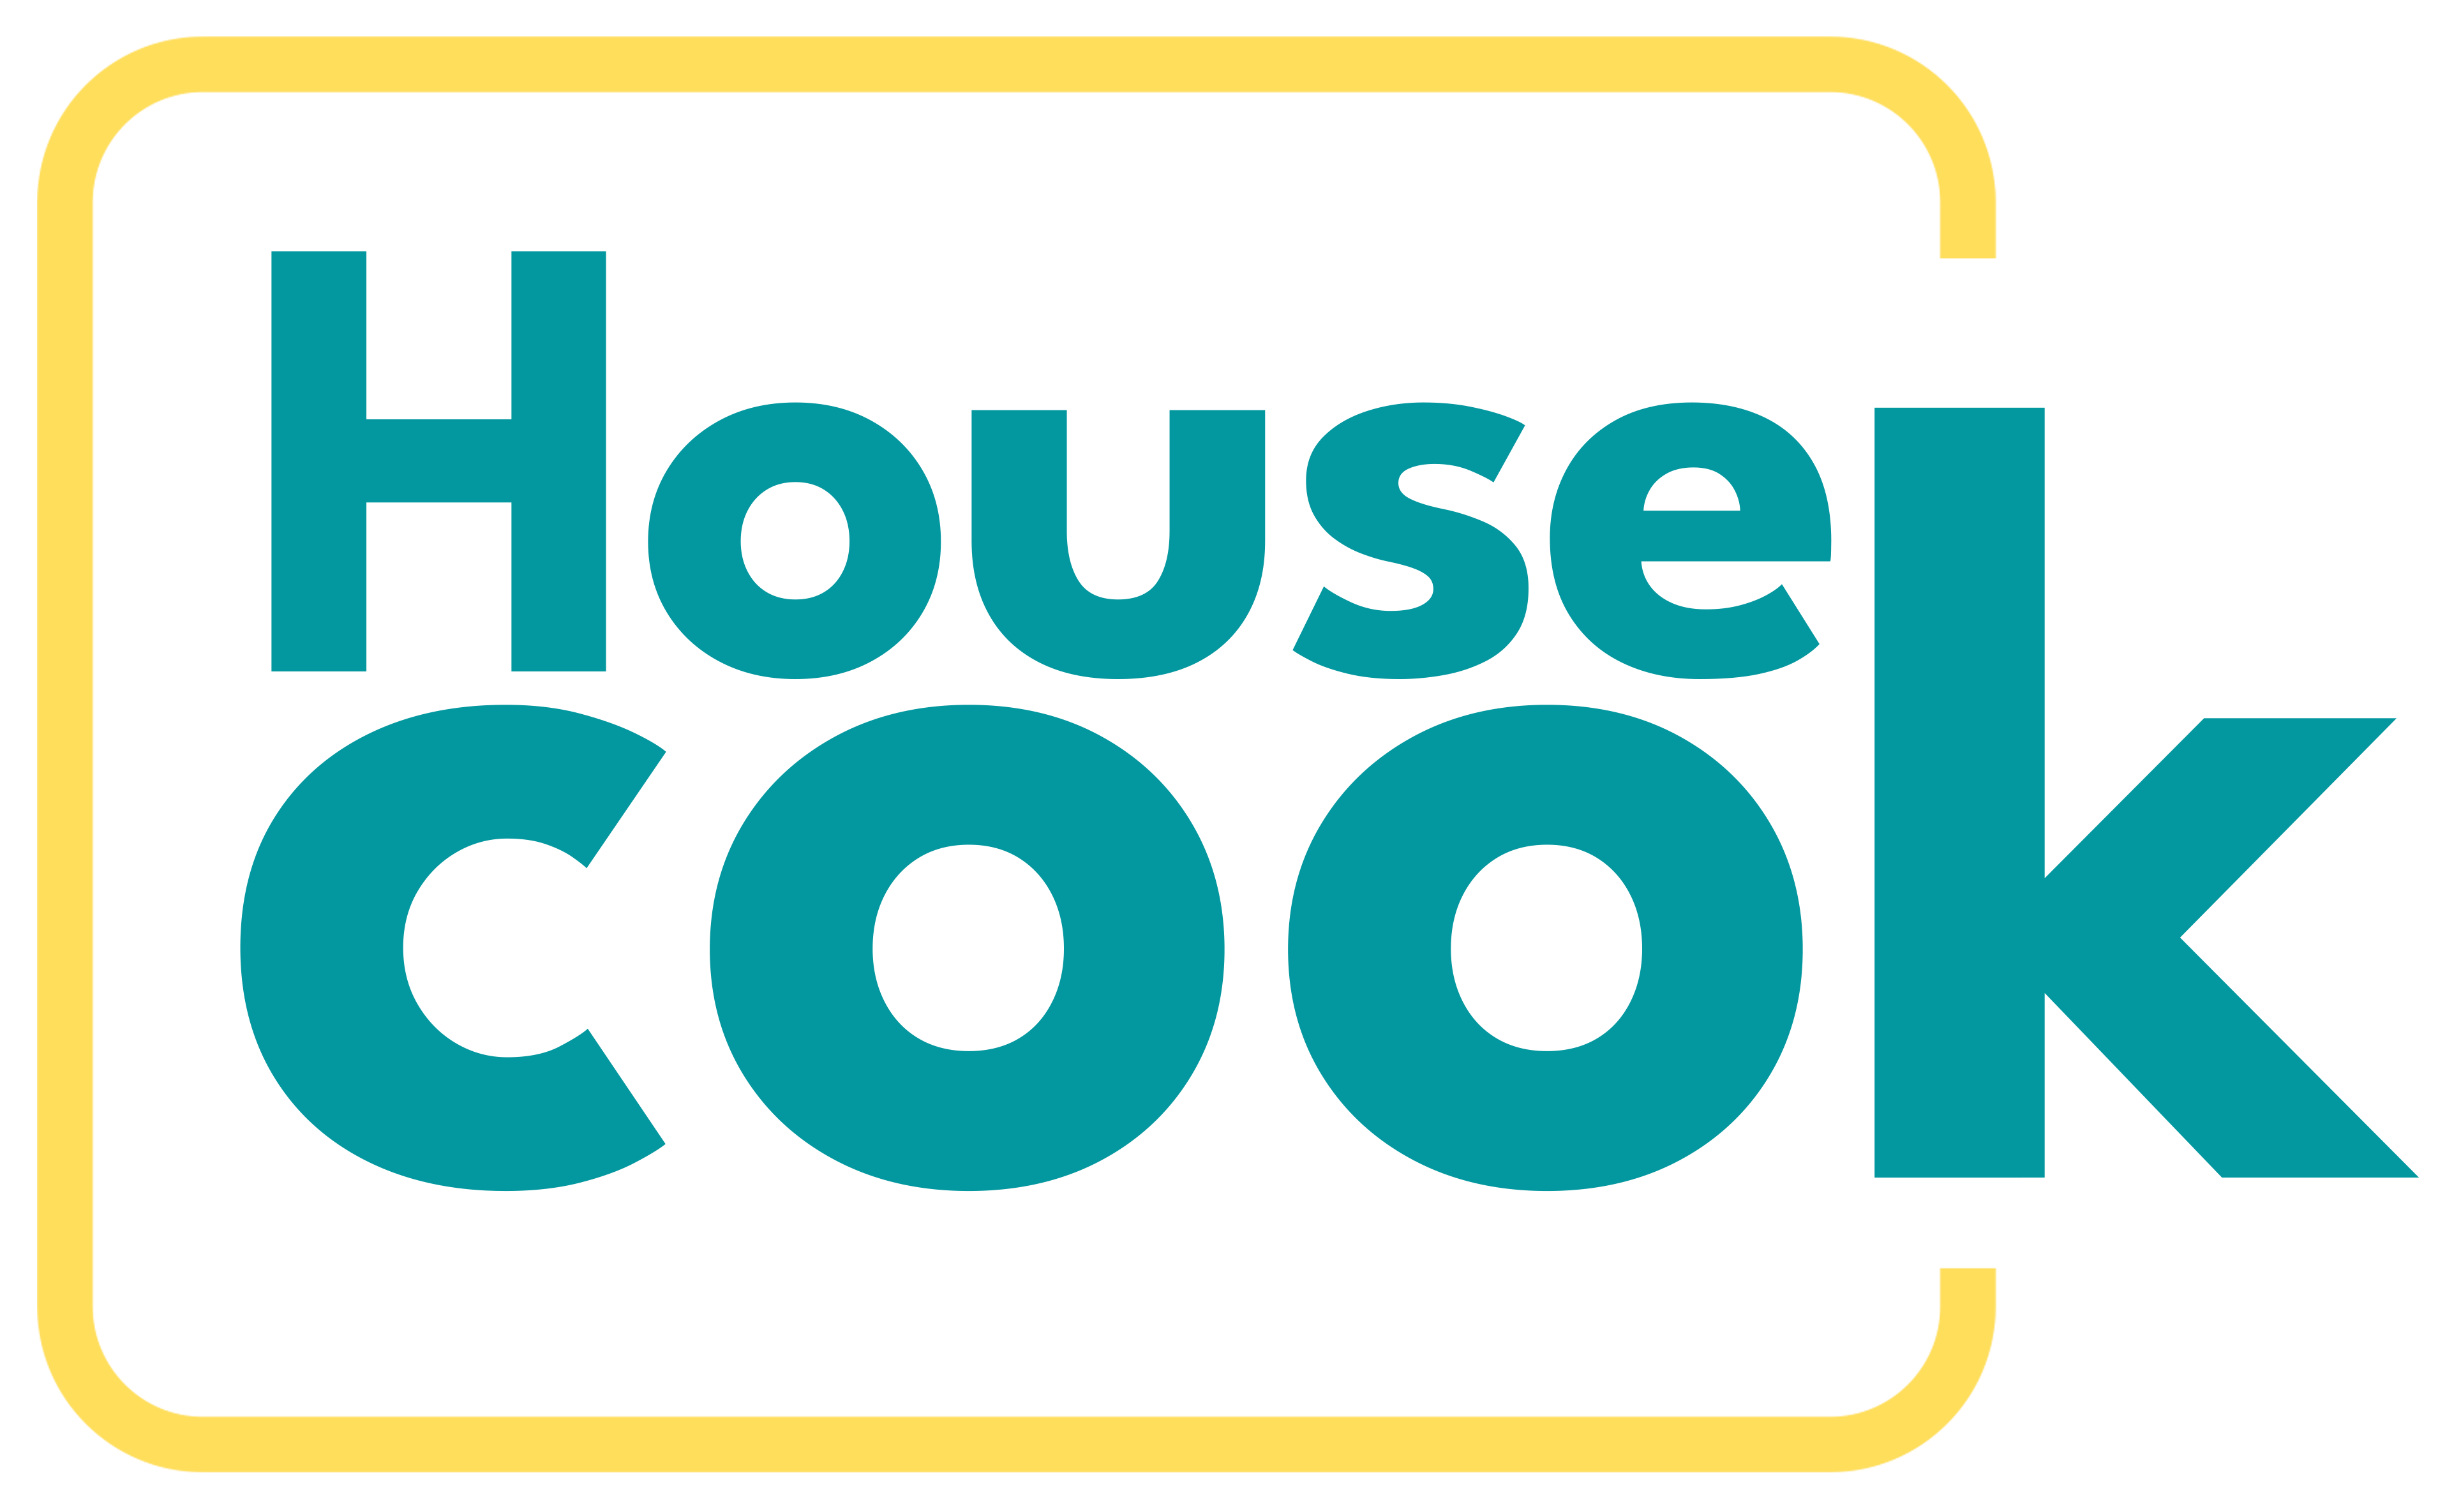 HouseCook